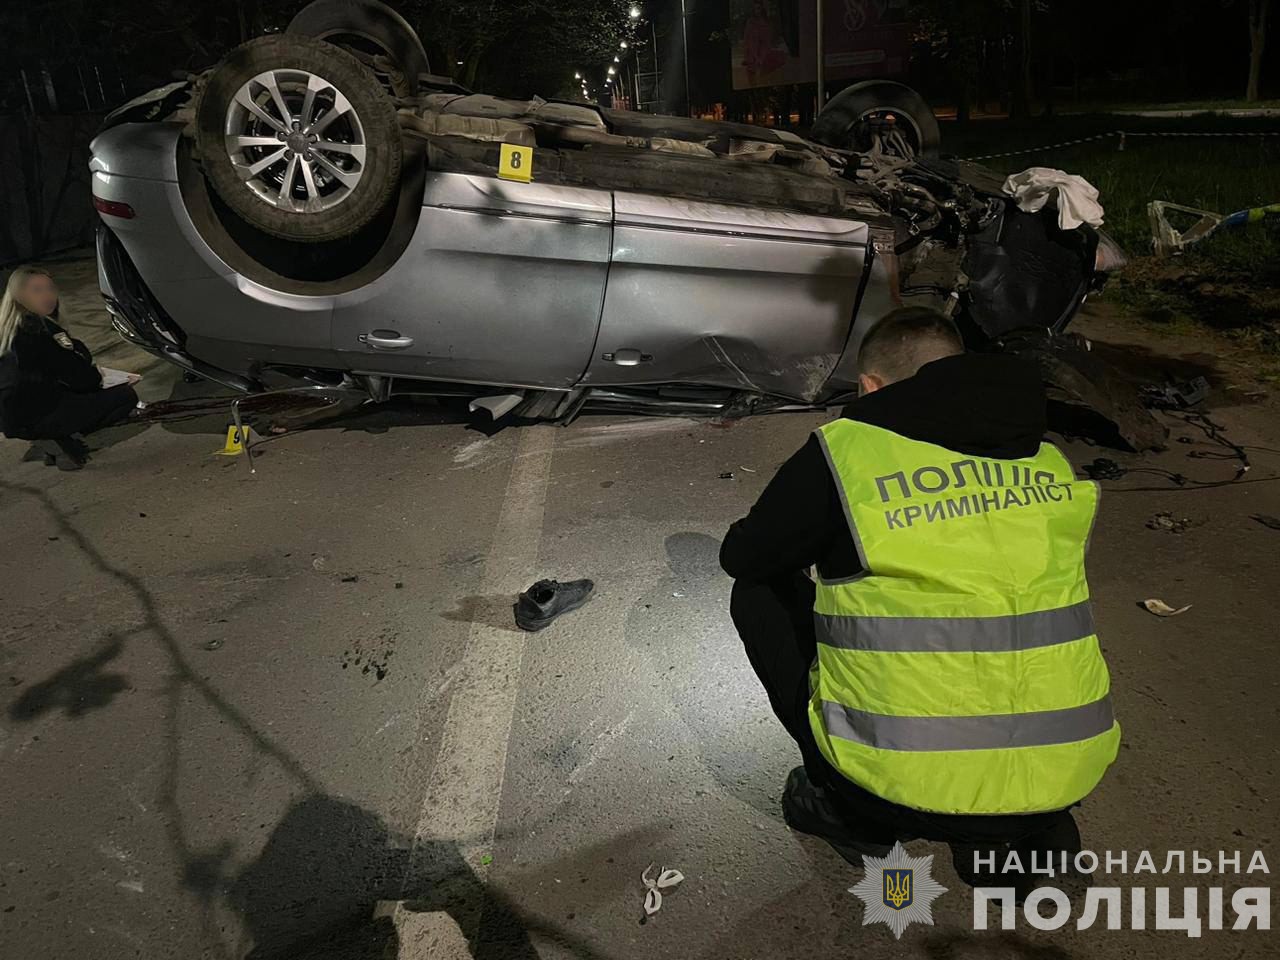 В Ужгороді опівночі група молодиків на Audi на швидкості влетіла в дерева: двоє загинули на місці, ще троє – в реанімації (ФОТО)